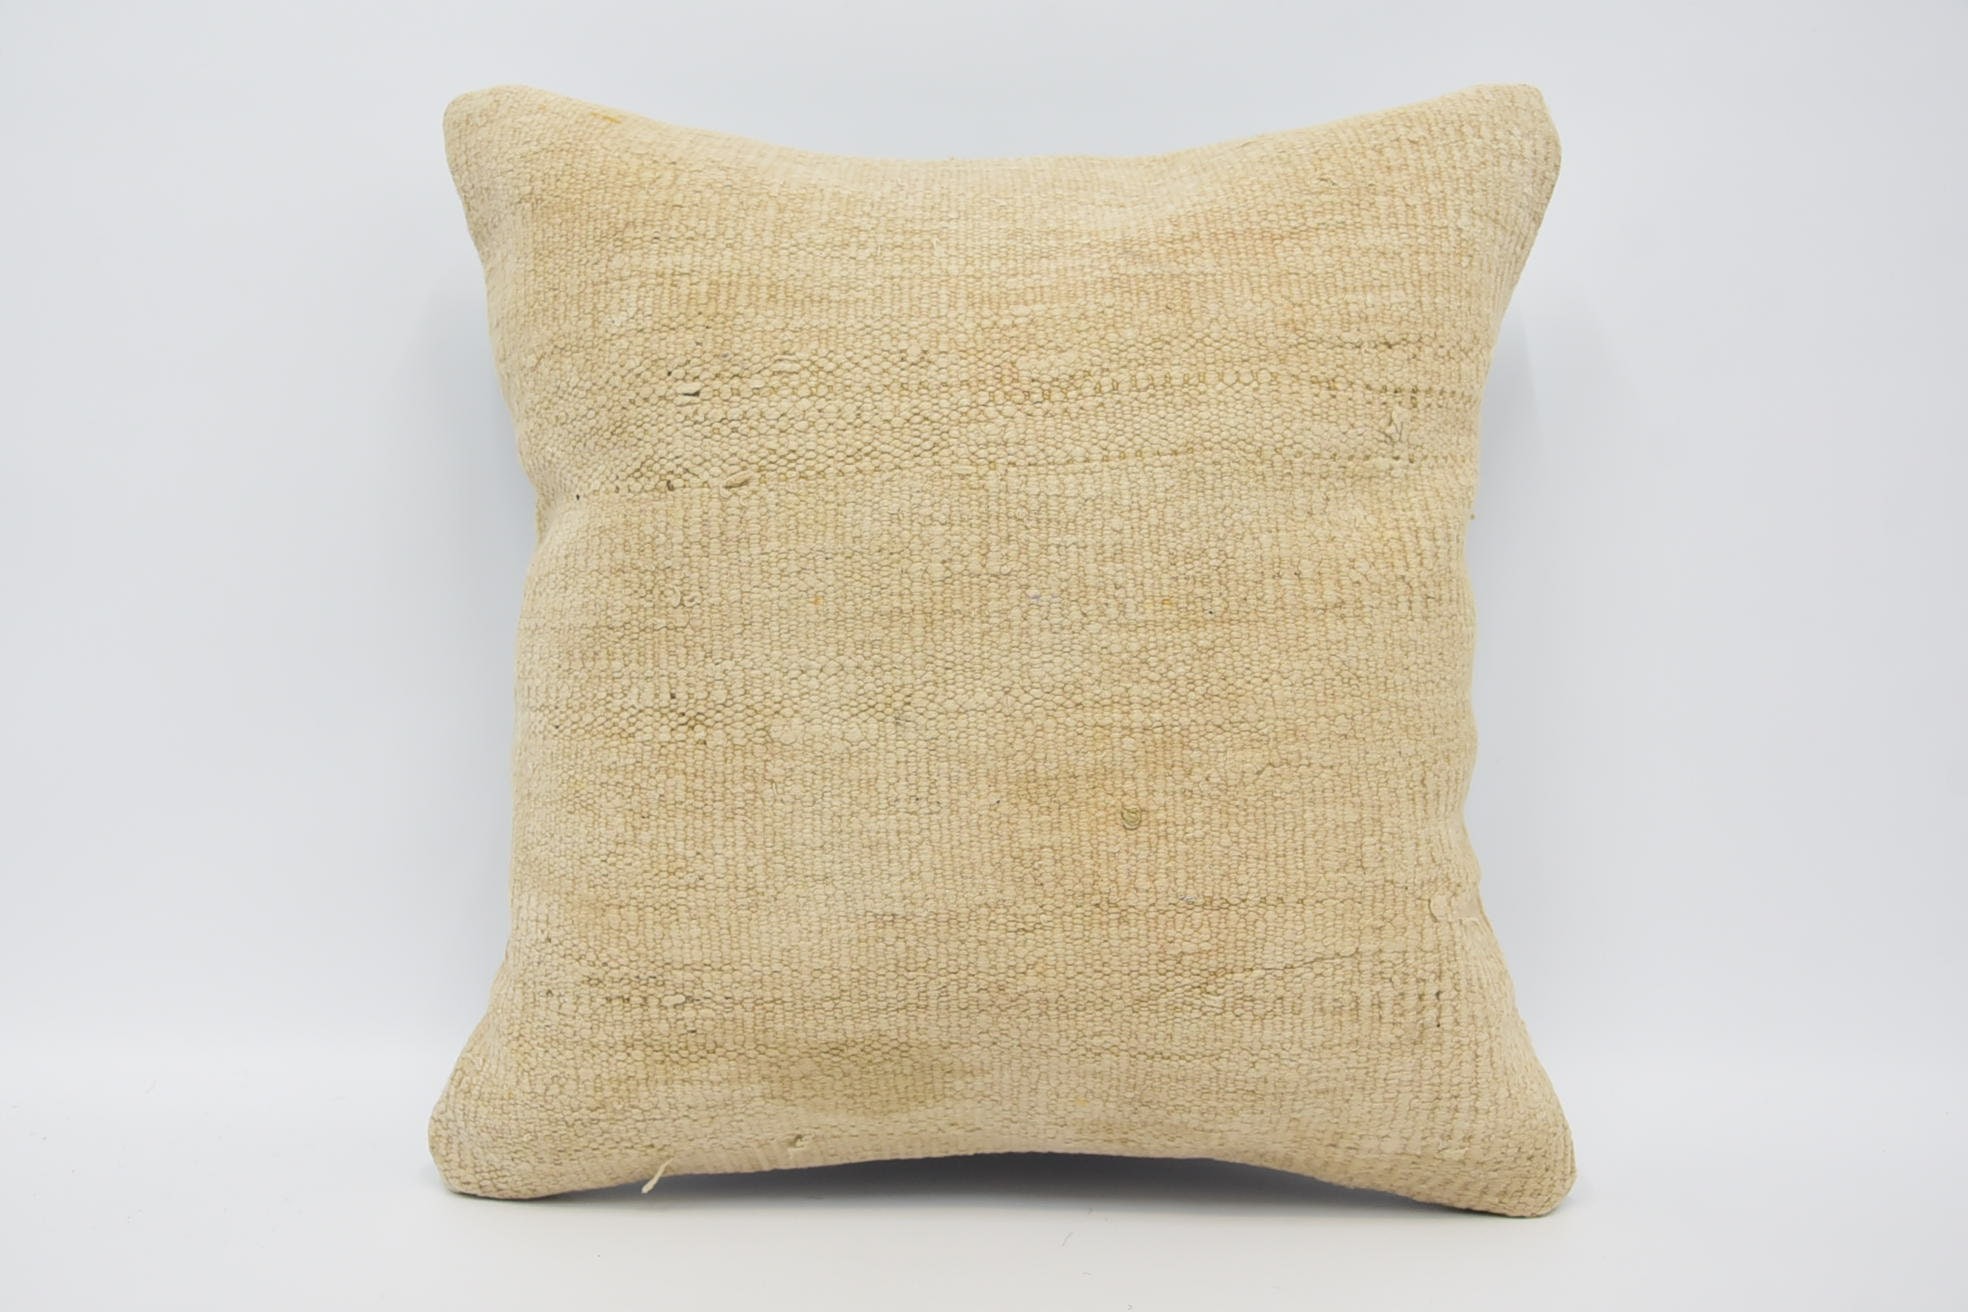 Home Decor Pillow, Boho Pillow Sham Cover, 18"x18" Beige Pillow, Handwoven Pillow Case, Couch Pillow Case, Turkish Pillow